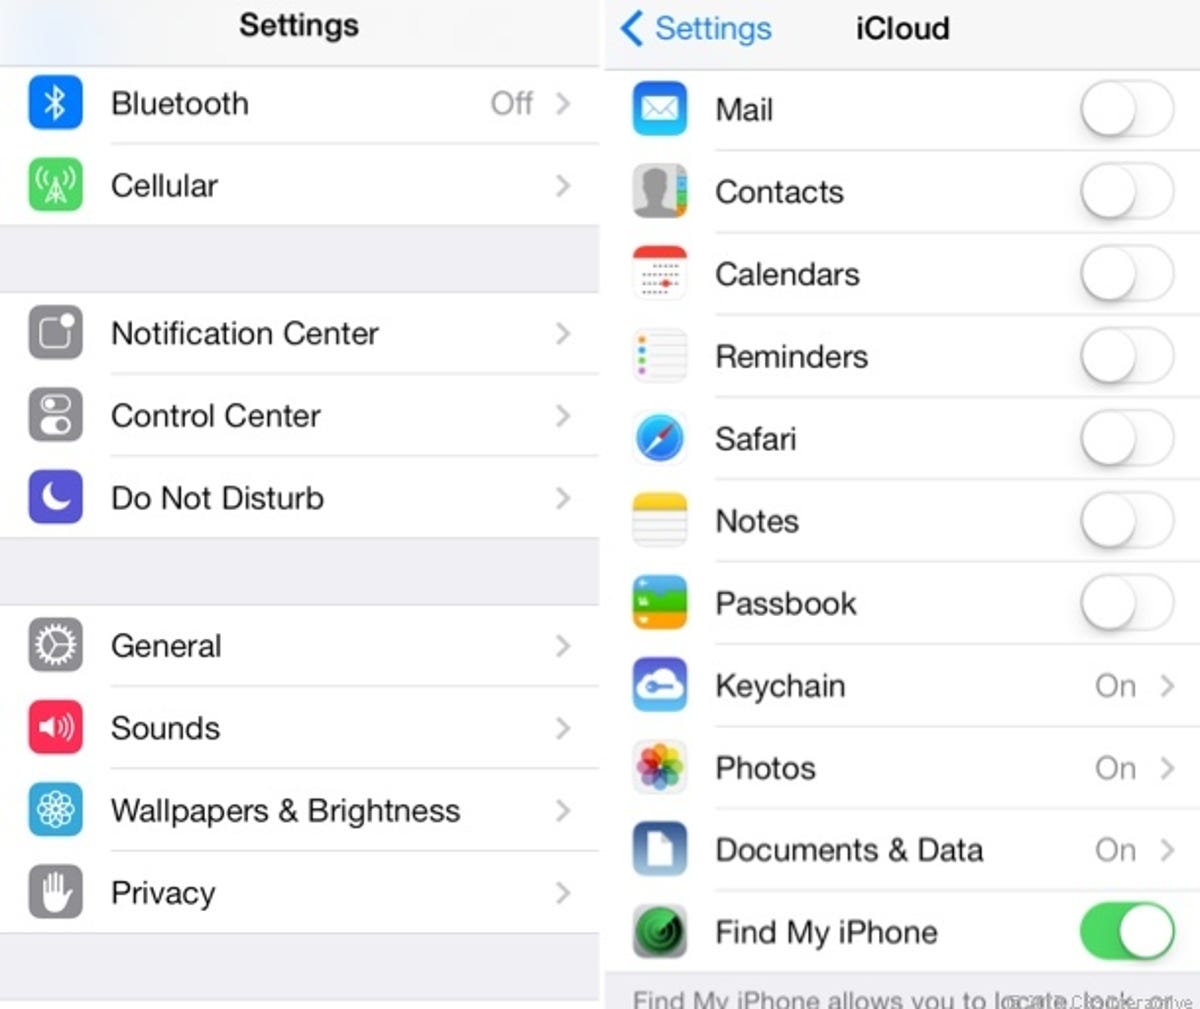 iOS 7 settings